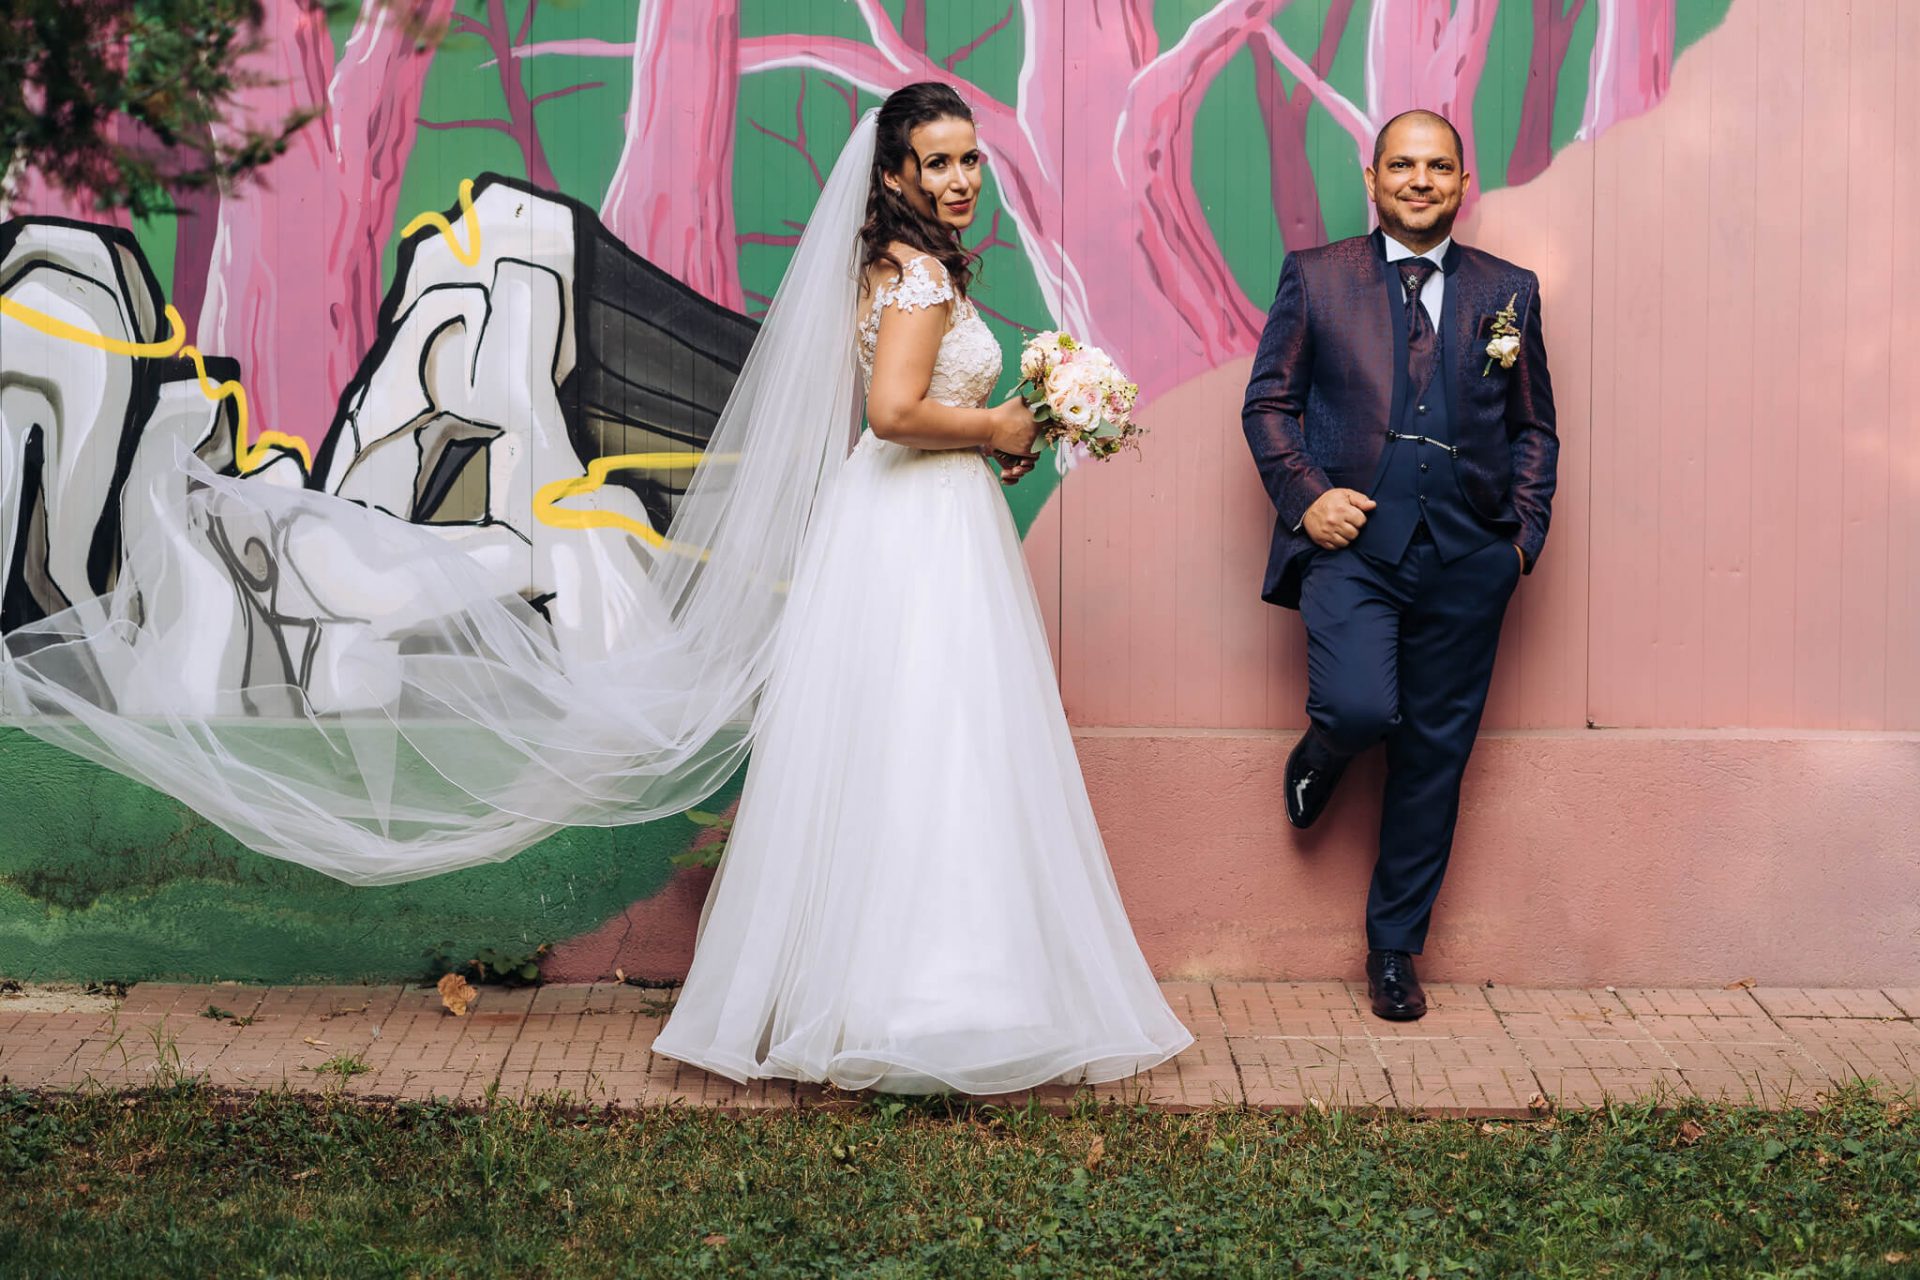 Ana si Iosif fotograf nunta